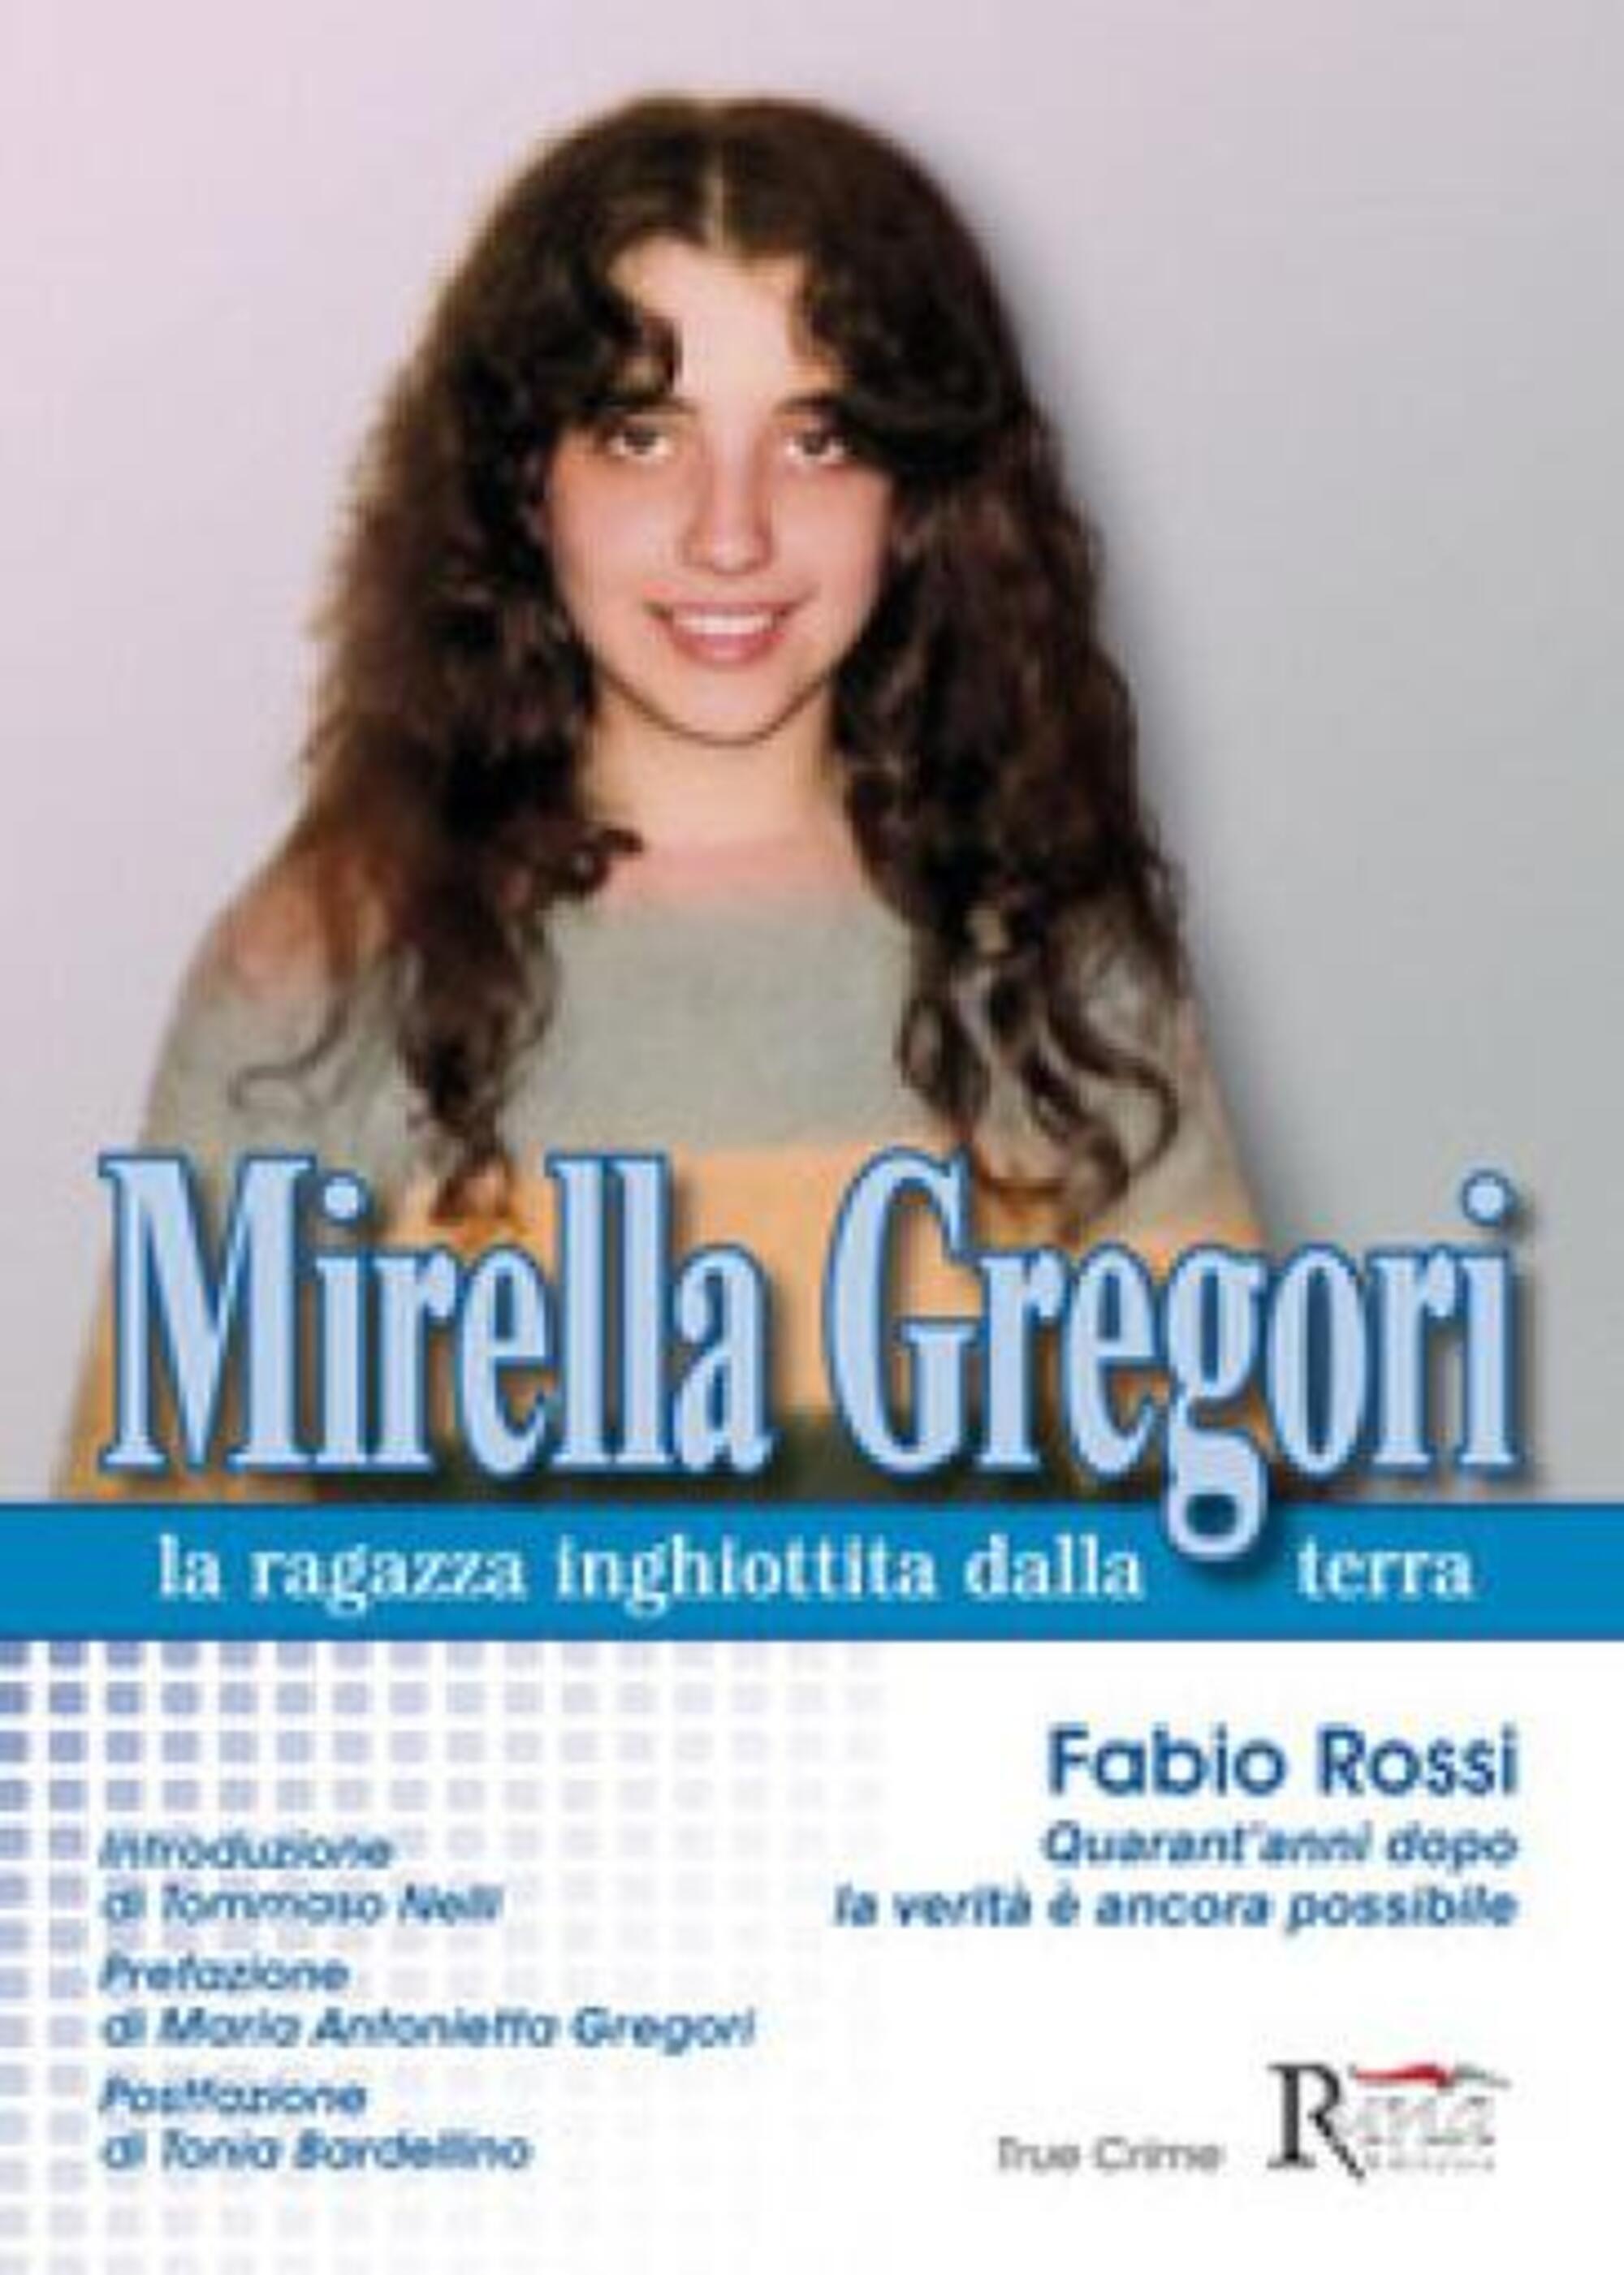 Mirella Gregori, la ragazza inghiottita dalla terra. Libro di Fabio Rossi